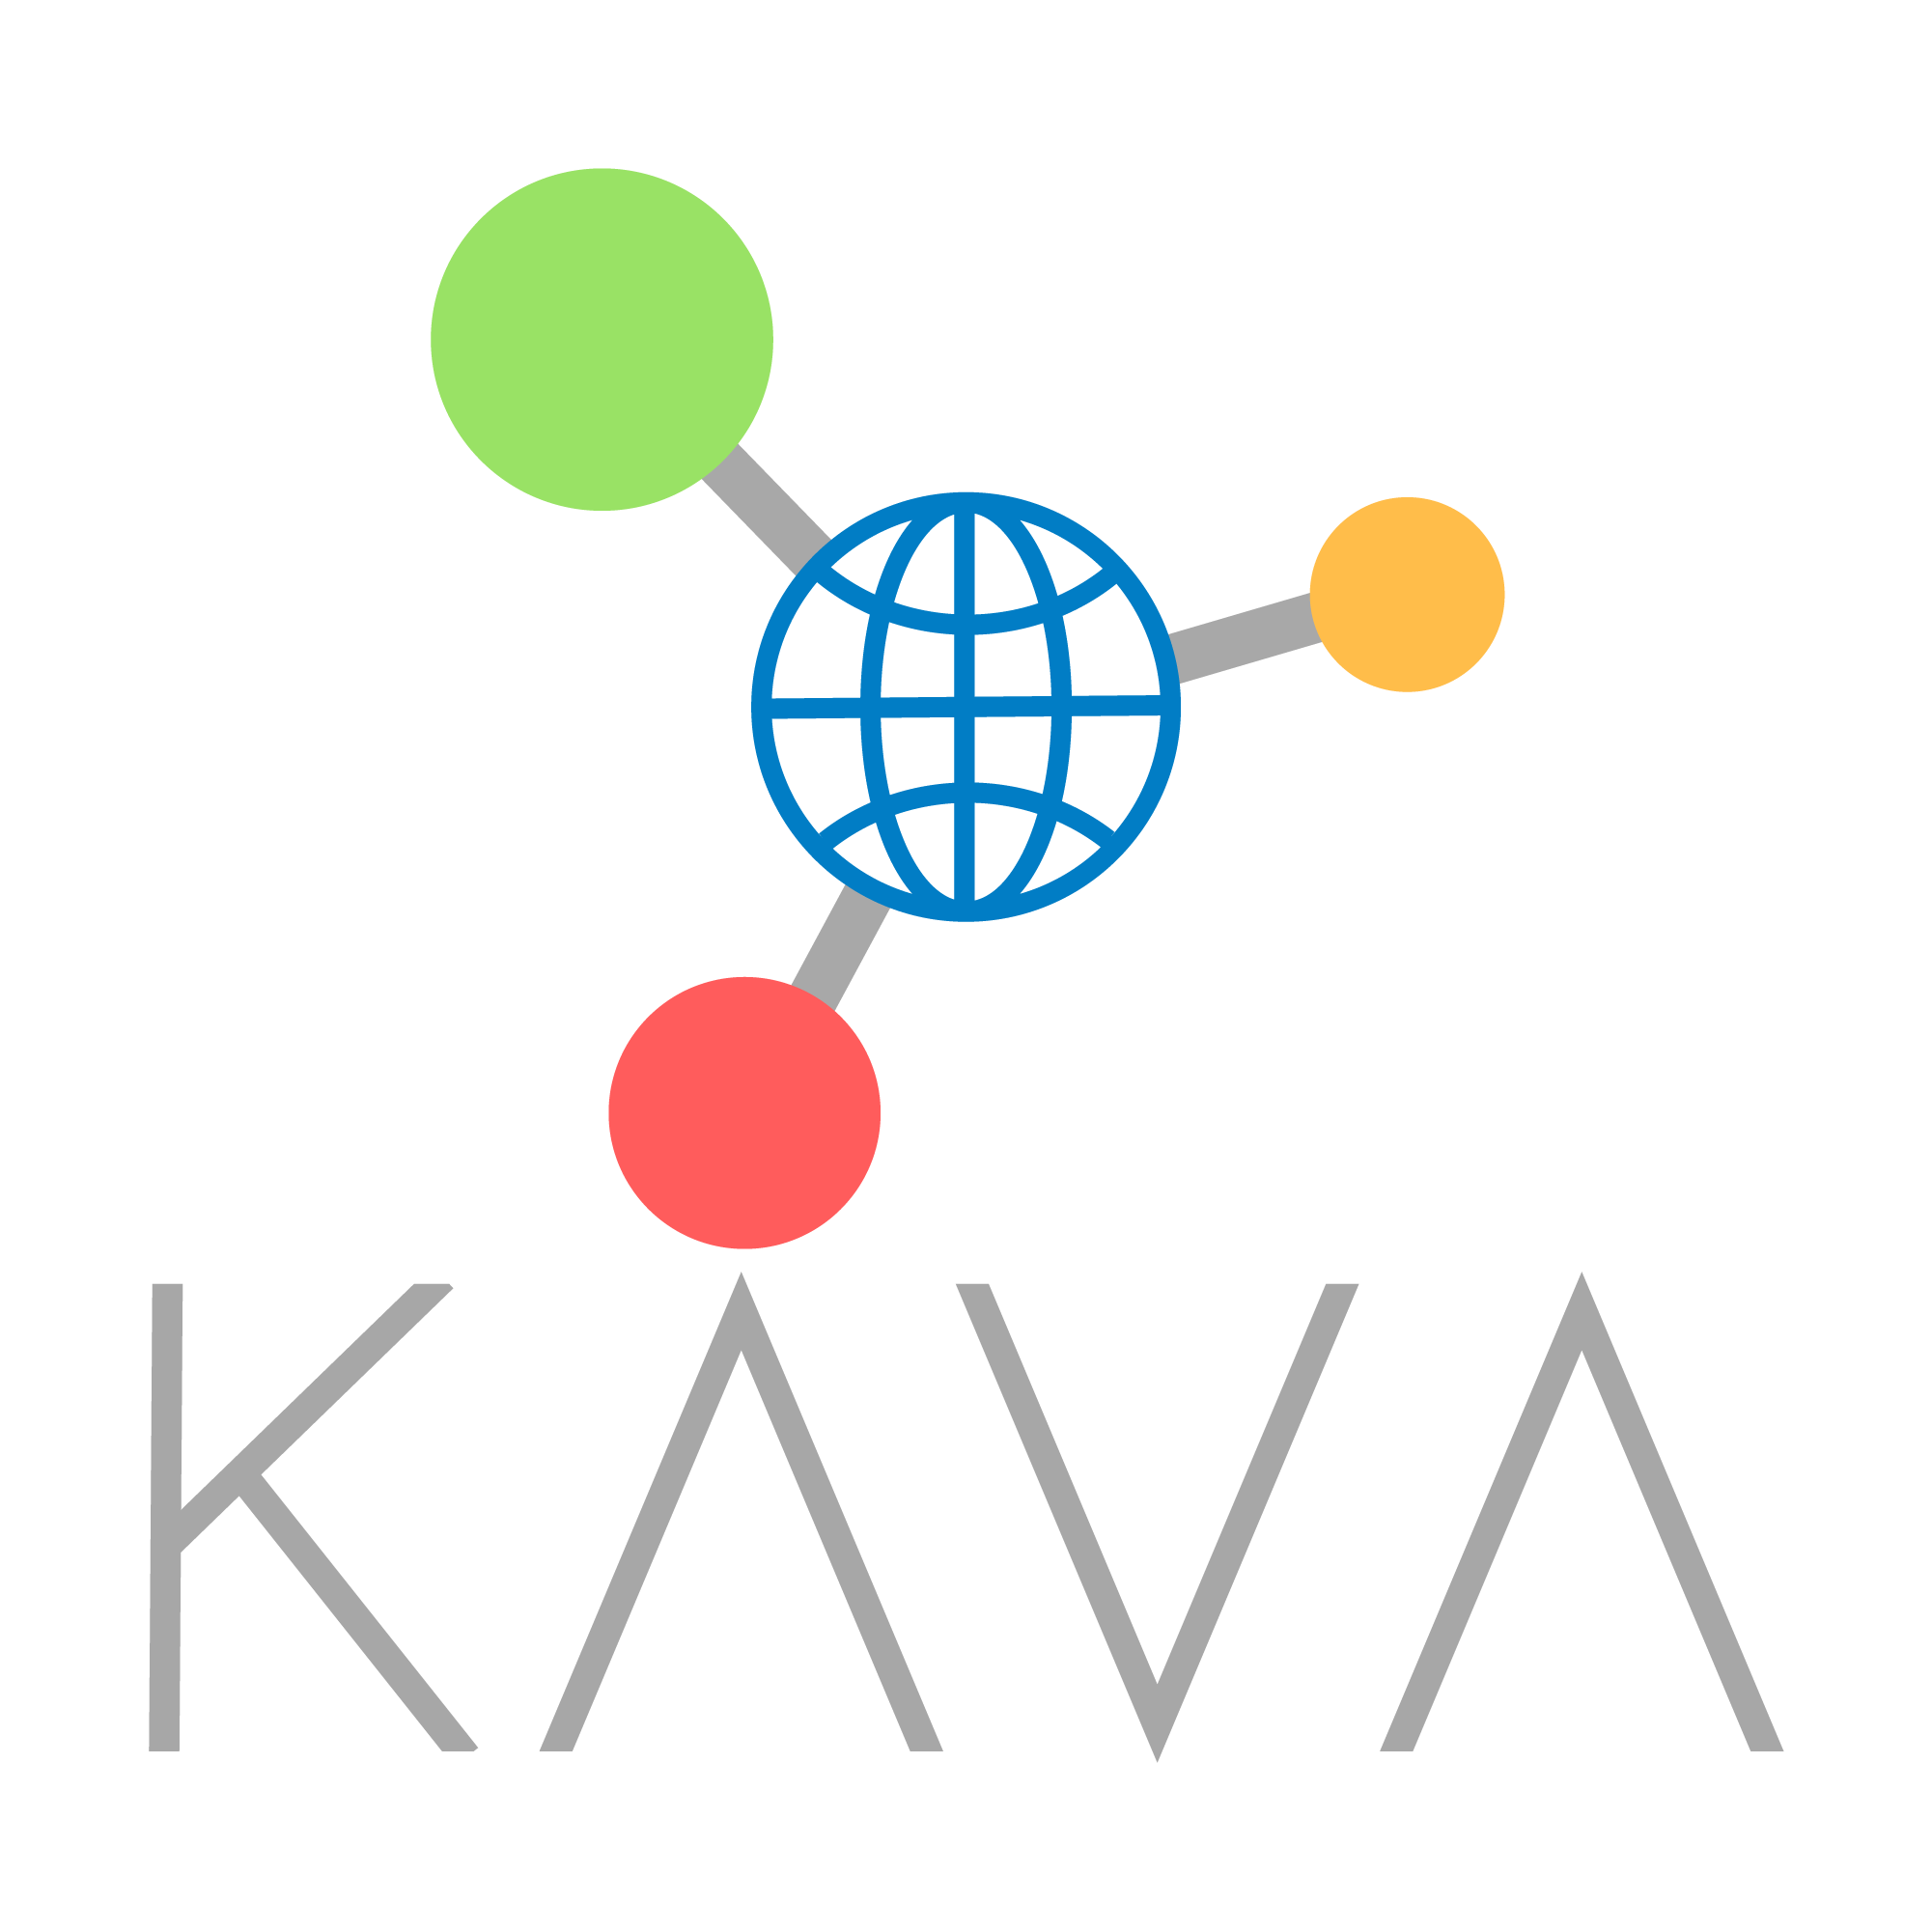 The Kavya